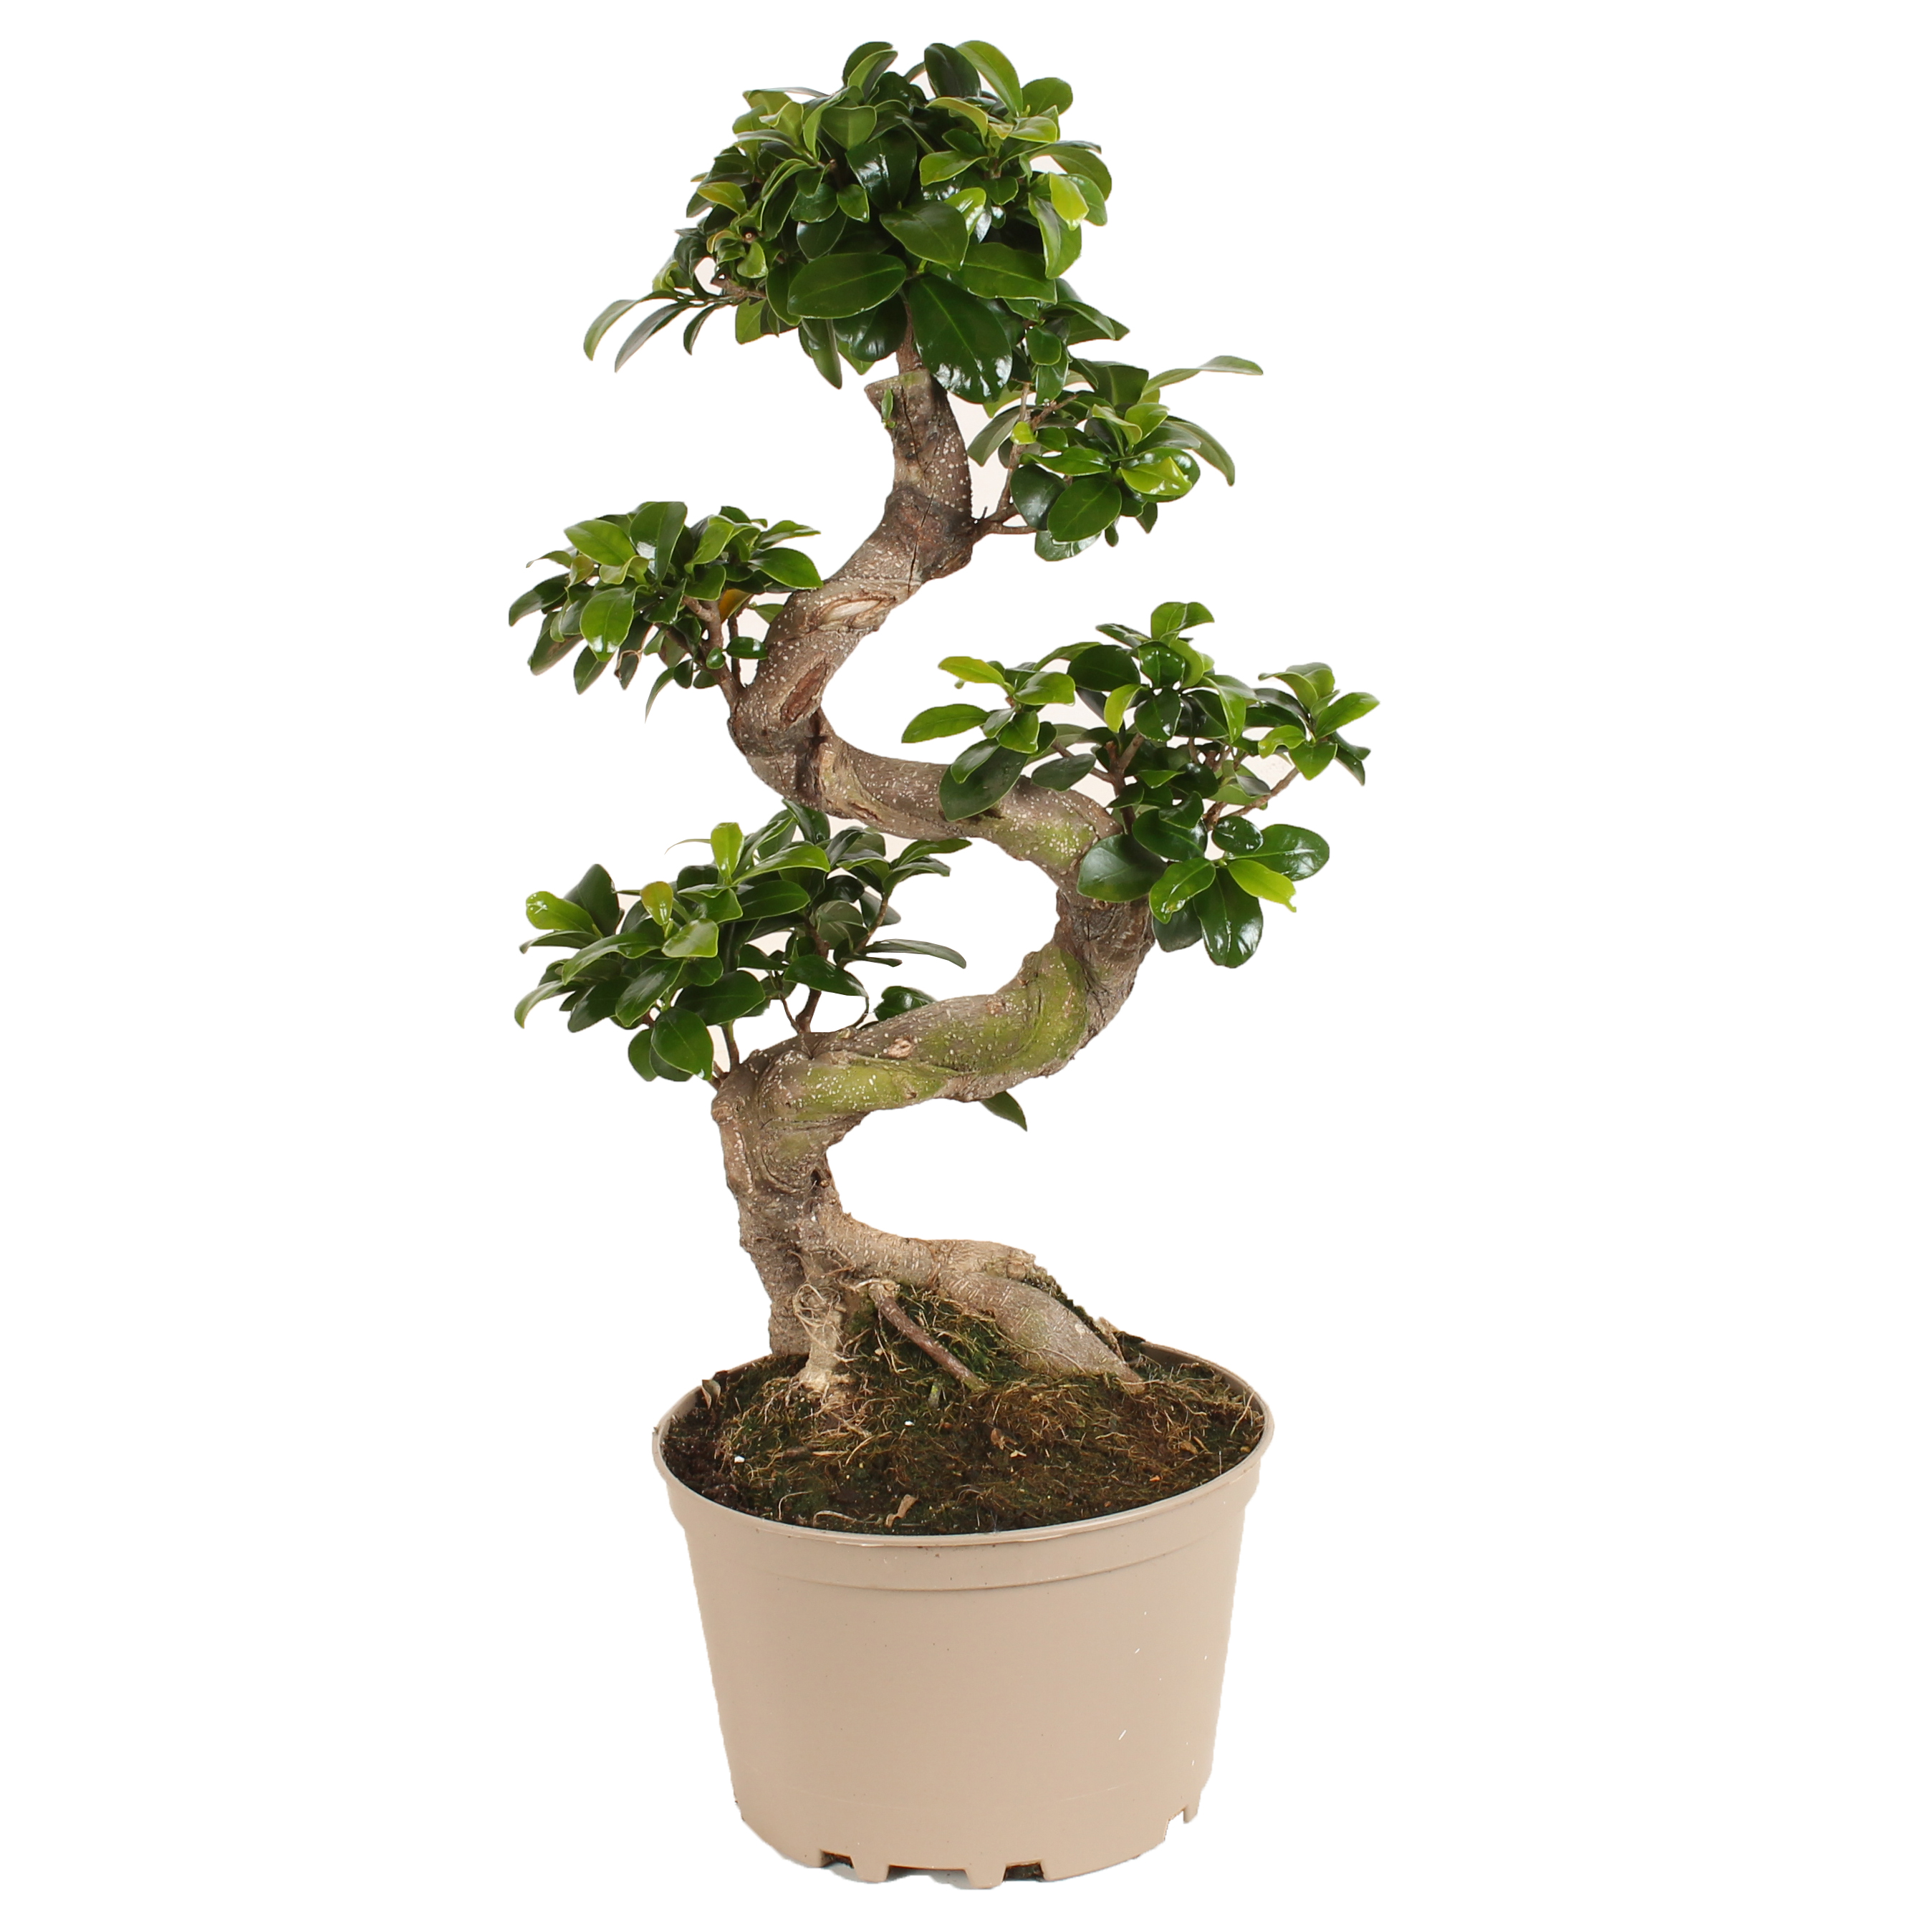 Entretien du bonsaï - Jardiland